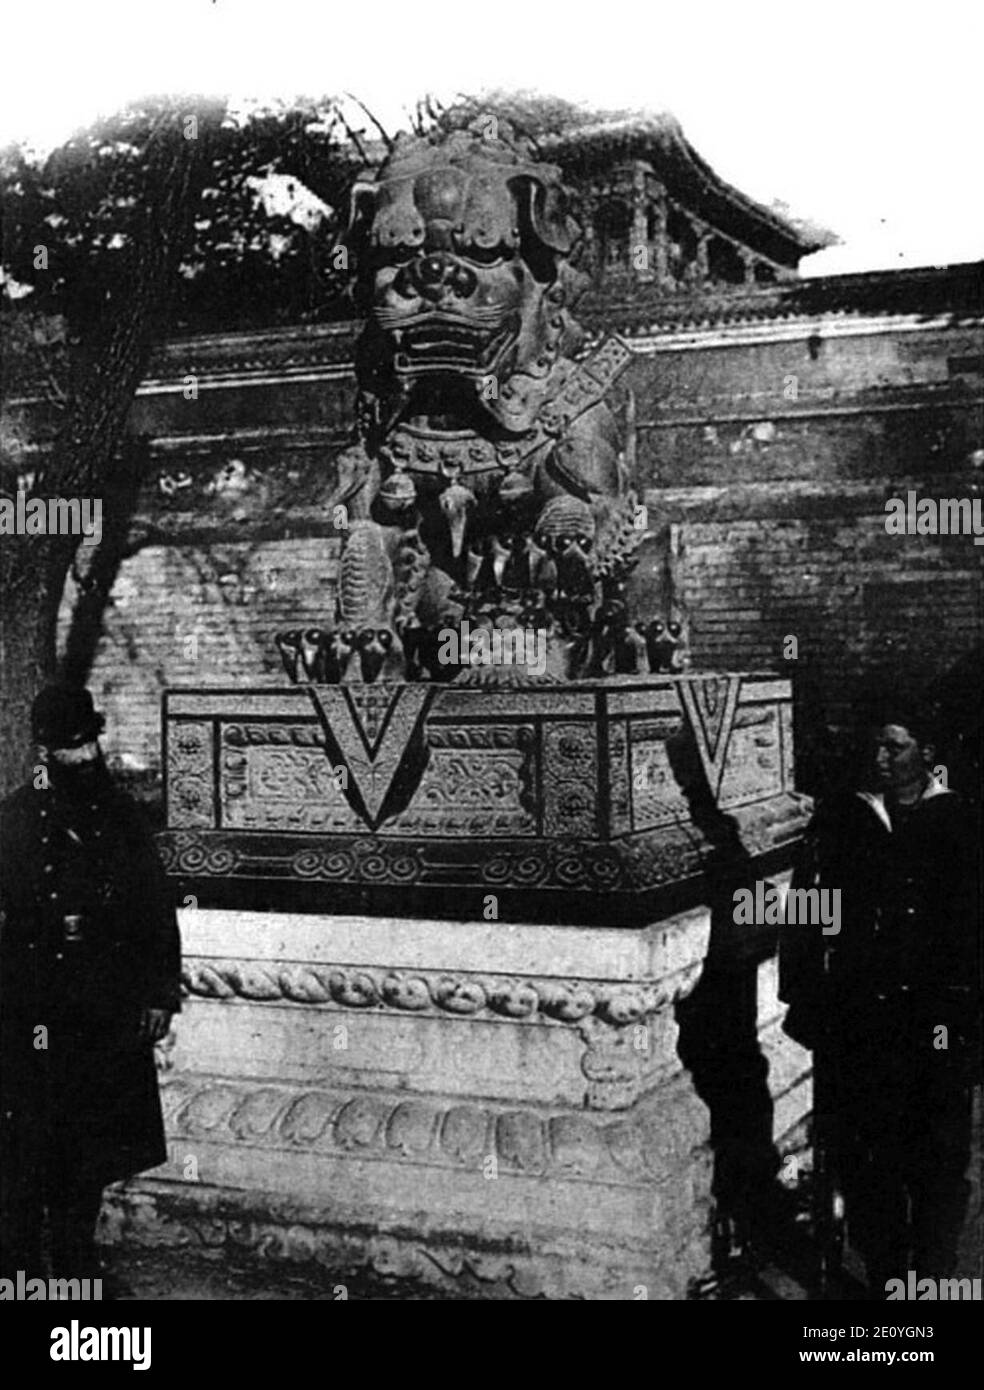 Lions de bronze ornant l’entrée d’une pagode occupée par les troupes italiennes, à proximité du Palais de la Belle-Vue du Lac. Sapeur français et marin italien en faction. Stock Photo